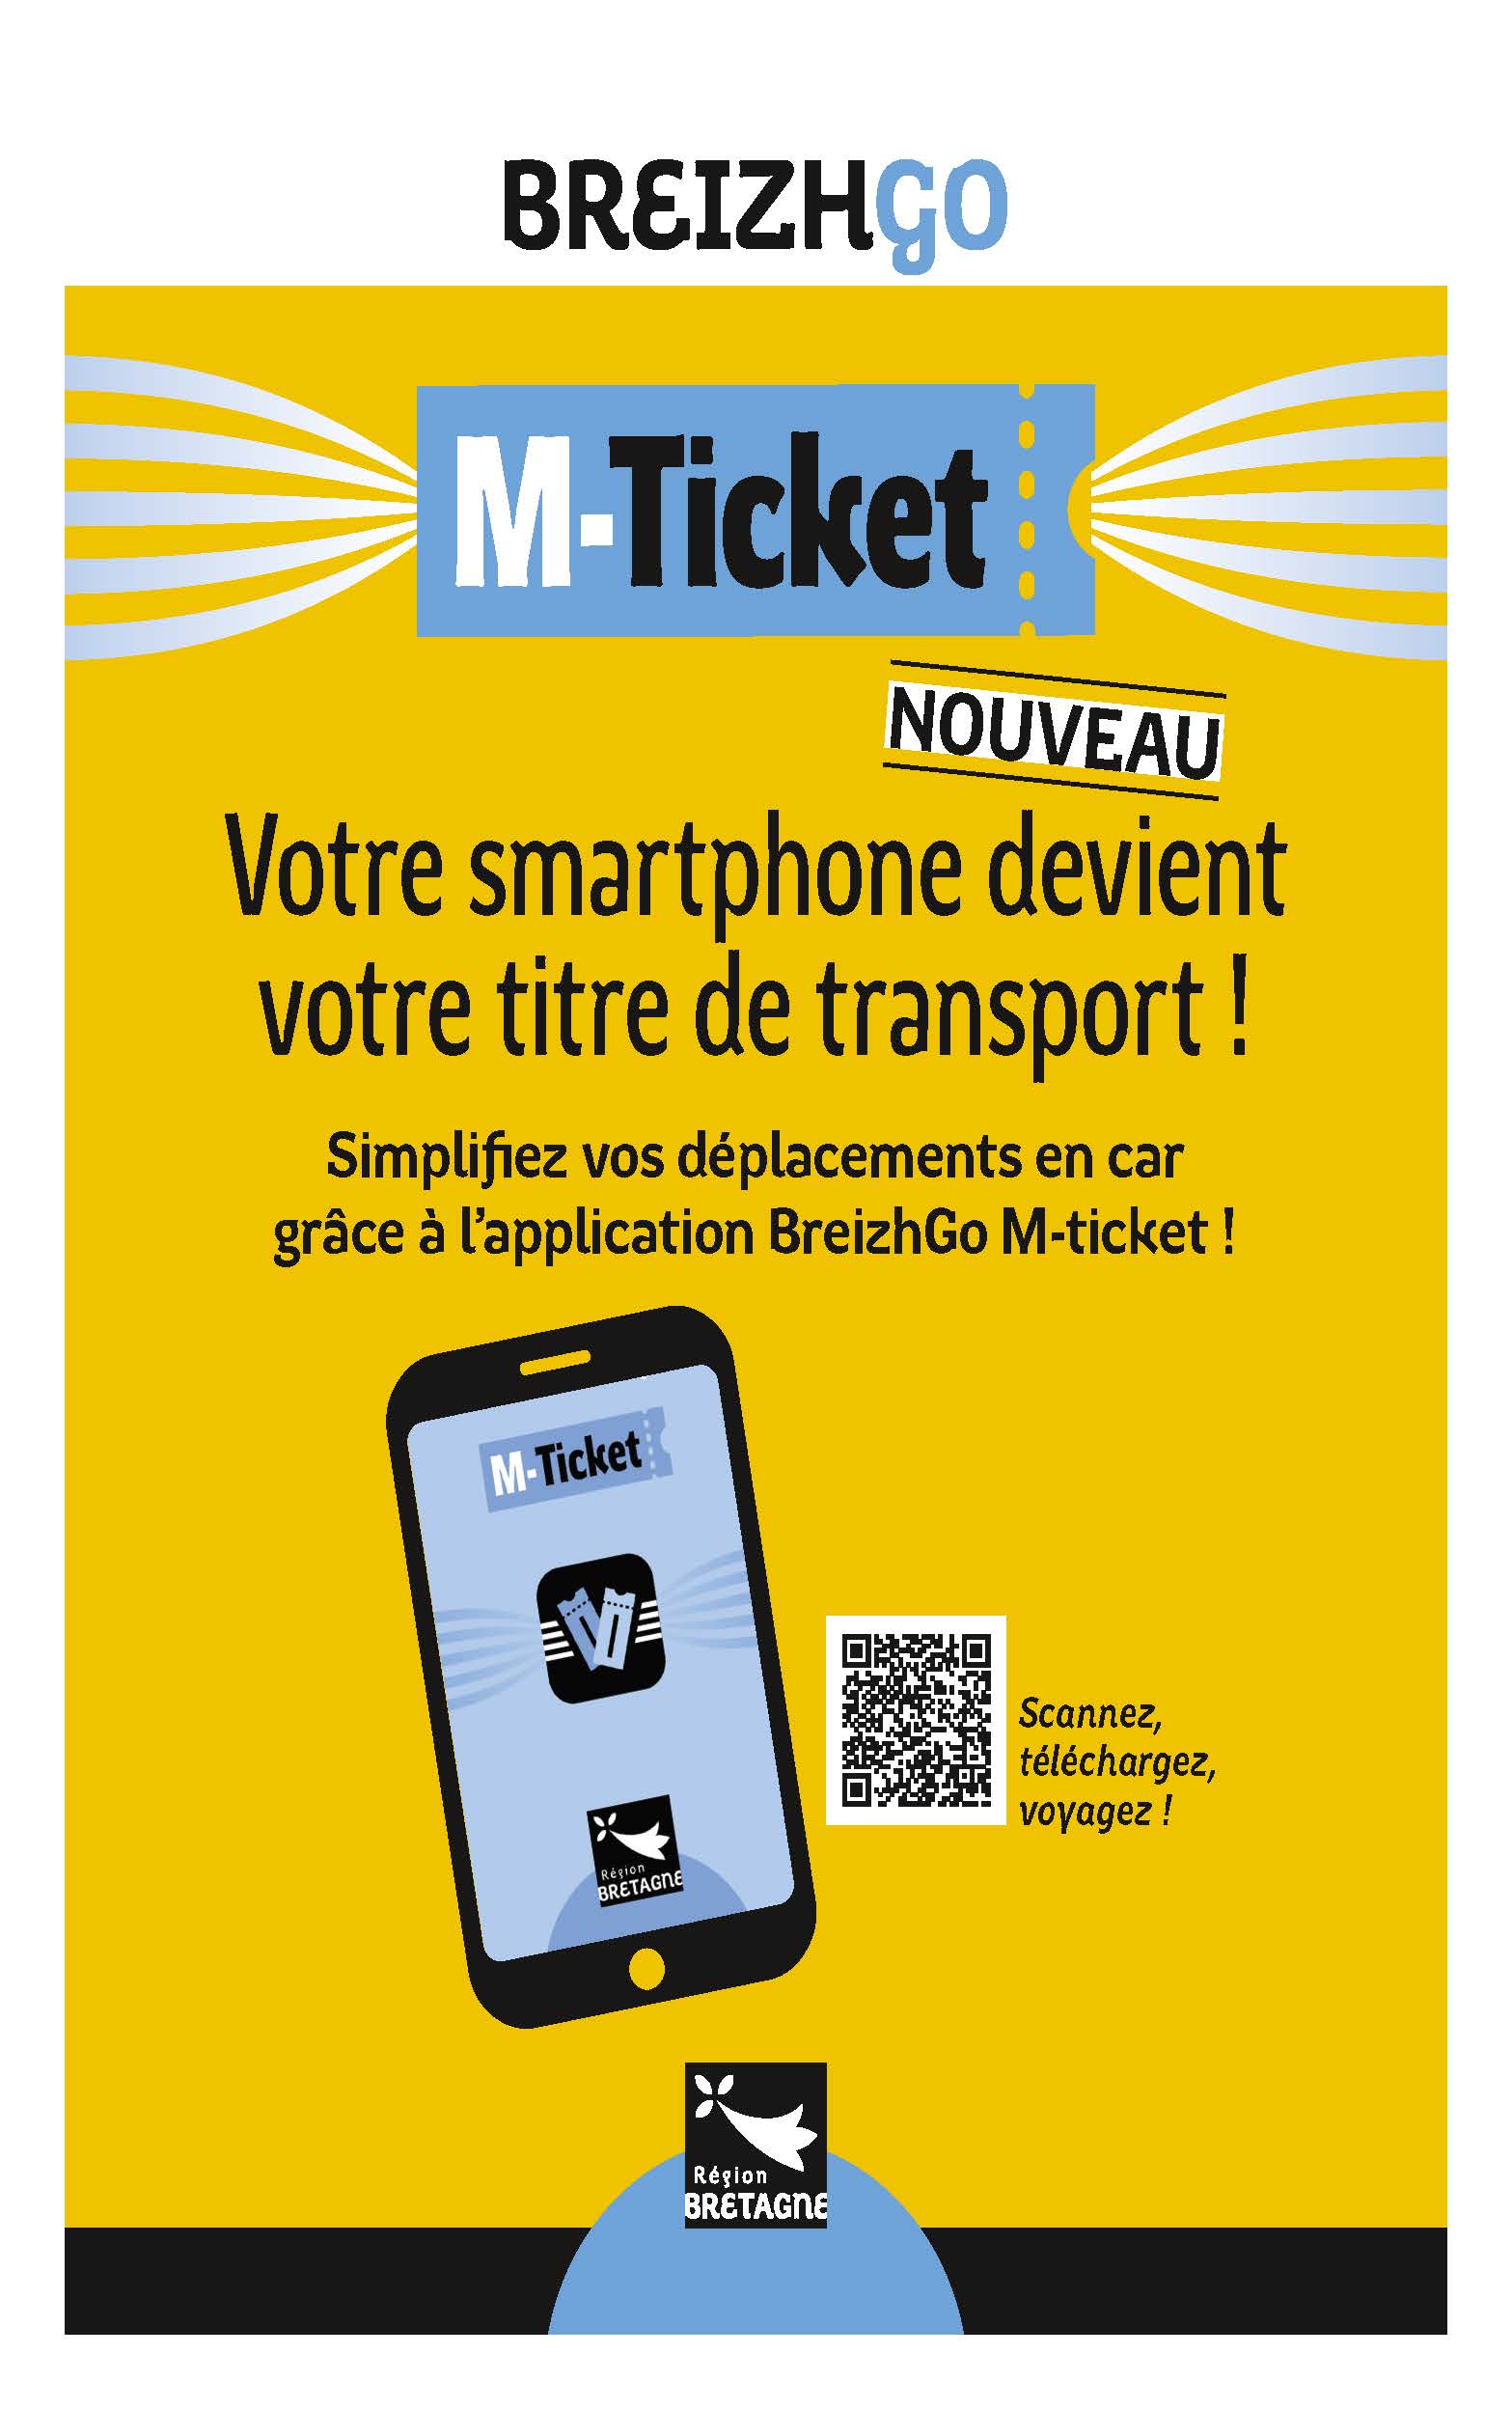 Nouveau : Application BreizhGo M-ticket